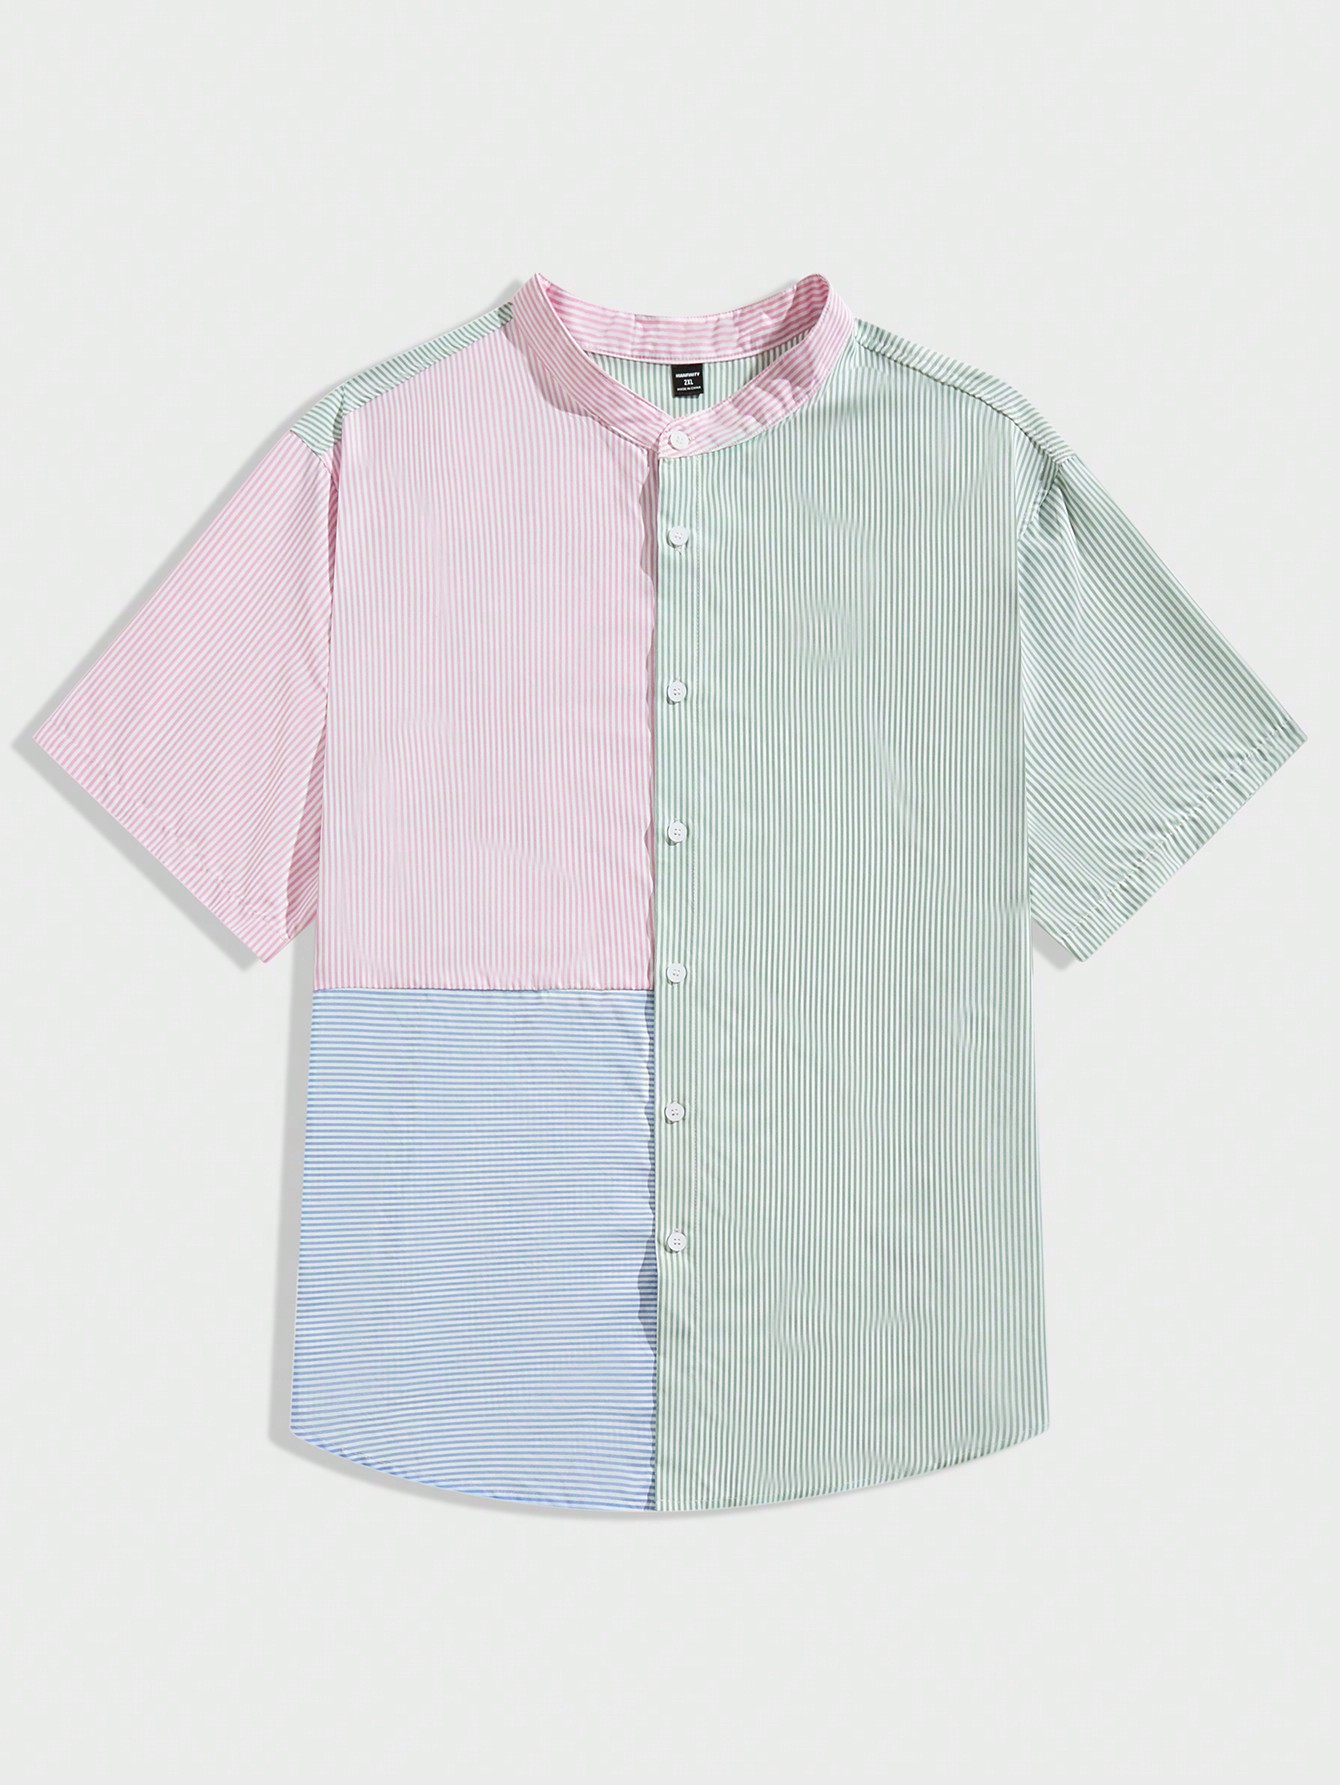 Мужская рубашка в полоску с цветными блоками Manfinity Hypemode Plus, зеленый мужская повседневная гавайская рубашка винтажная гавайская пляжная крутая повседневная рубашка оверсайз с короткими рукавами и забавным